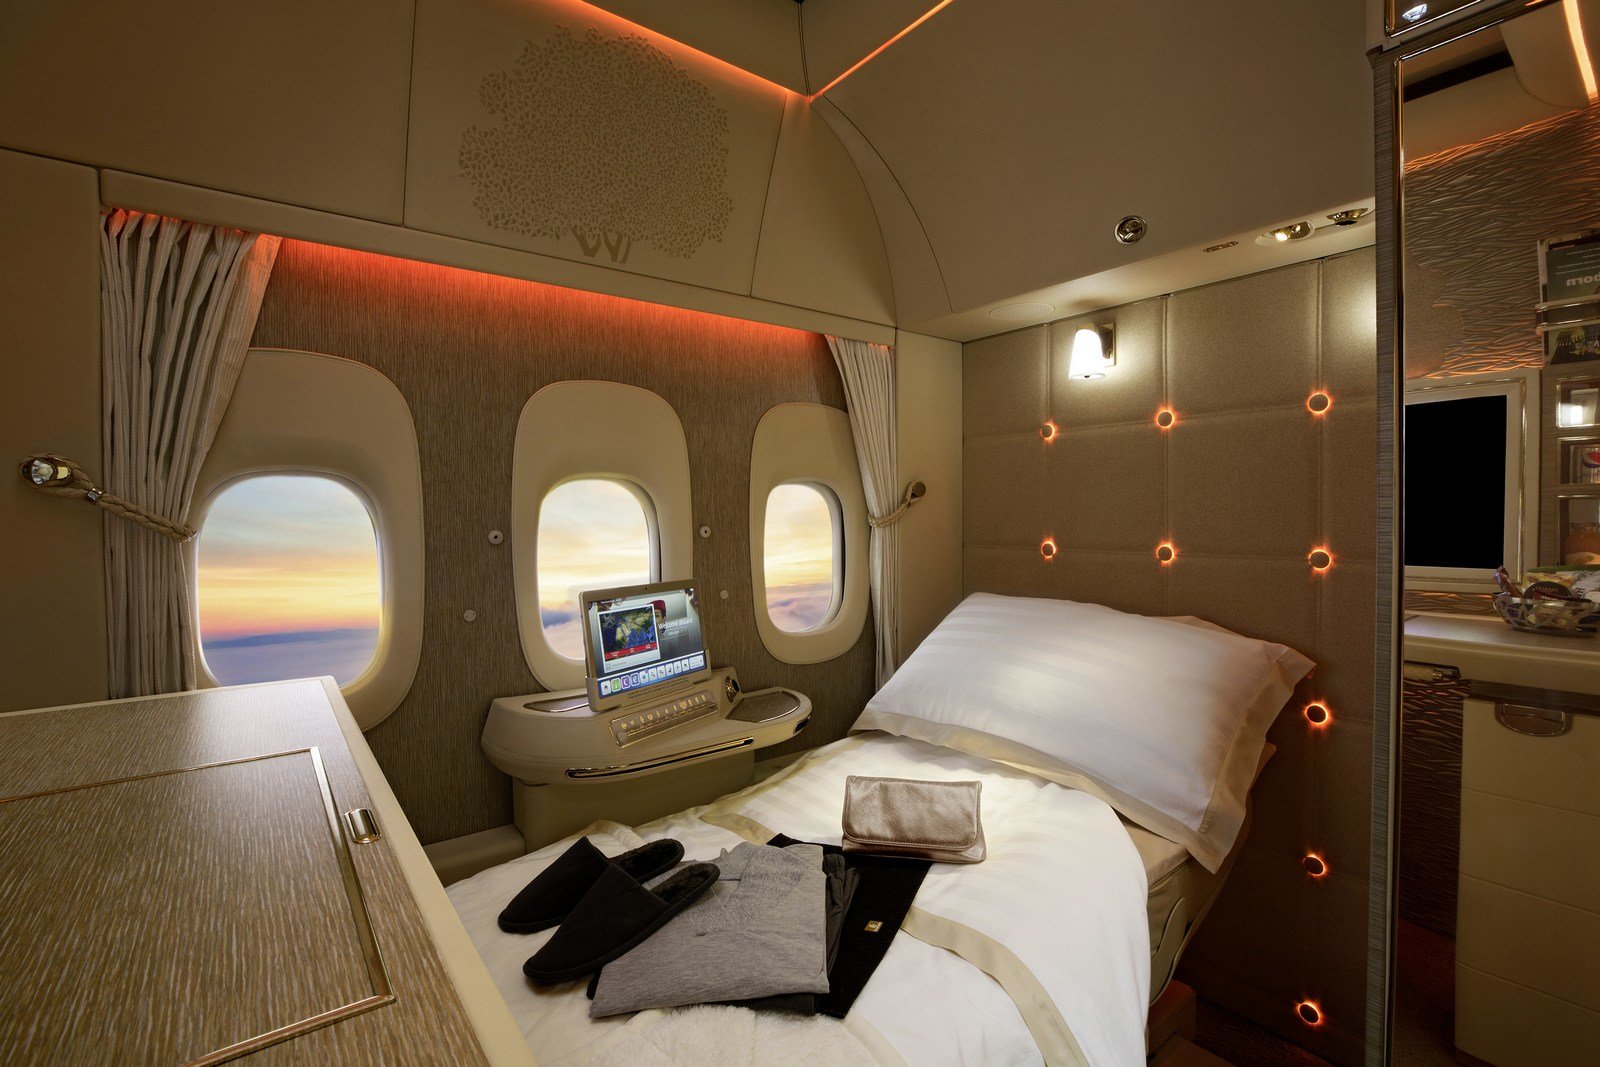 Nová první třída v letadlech Boeing 777 společnosti Emirates se inspirovala luxusním interiérem vozu Mercedes-Benz S-Class